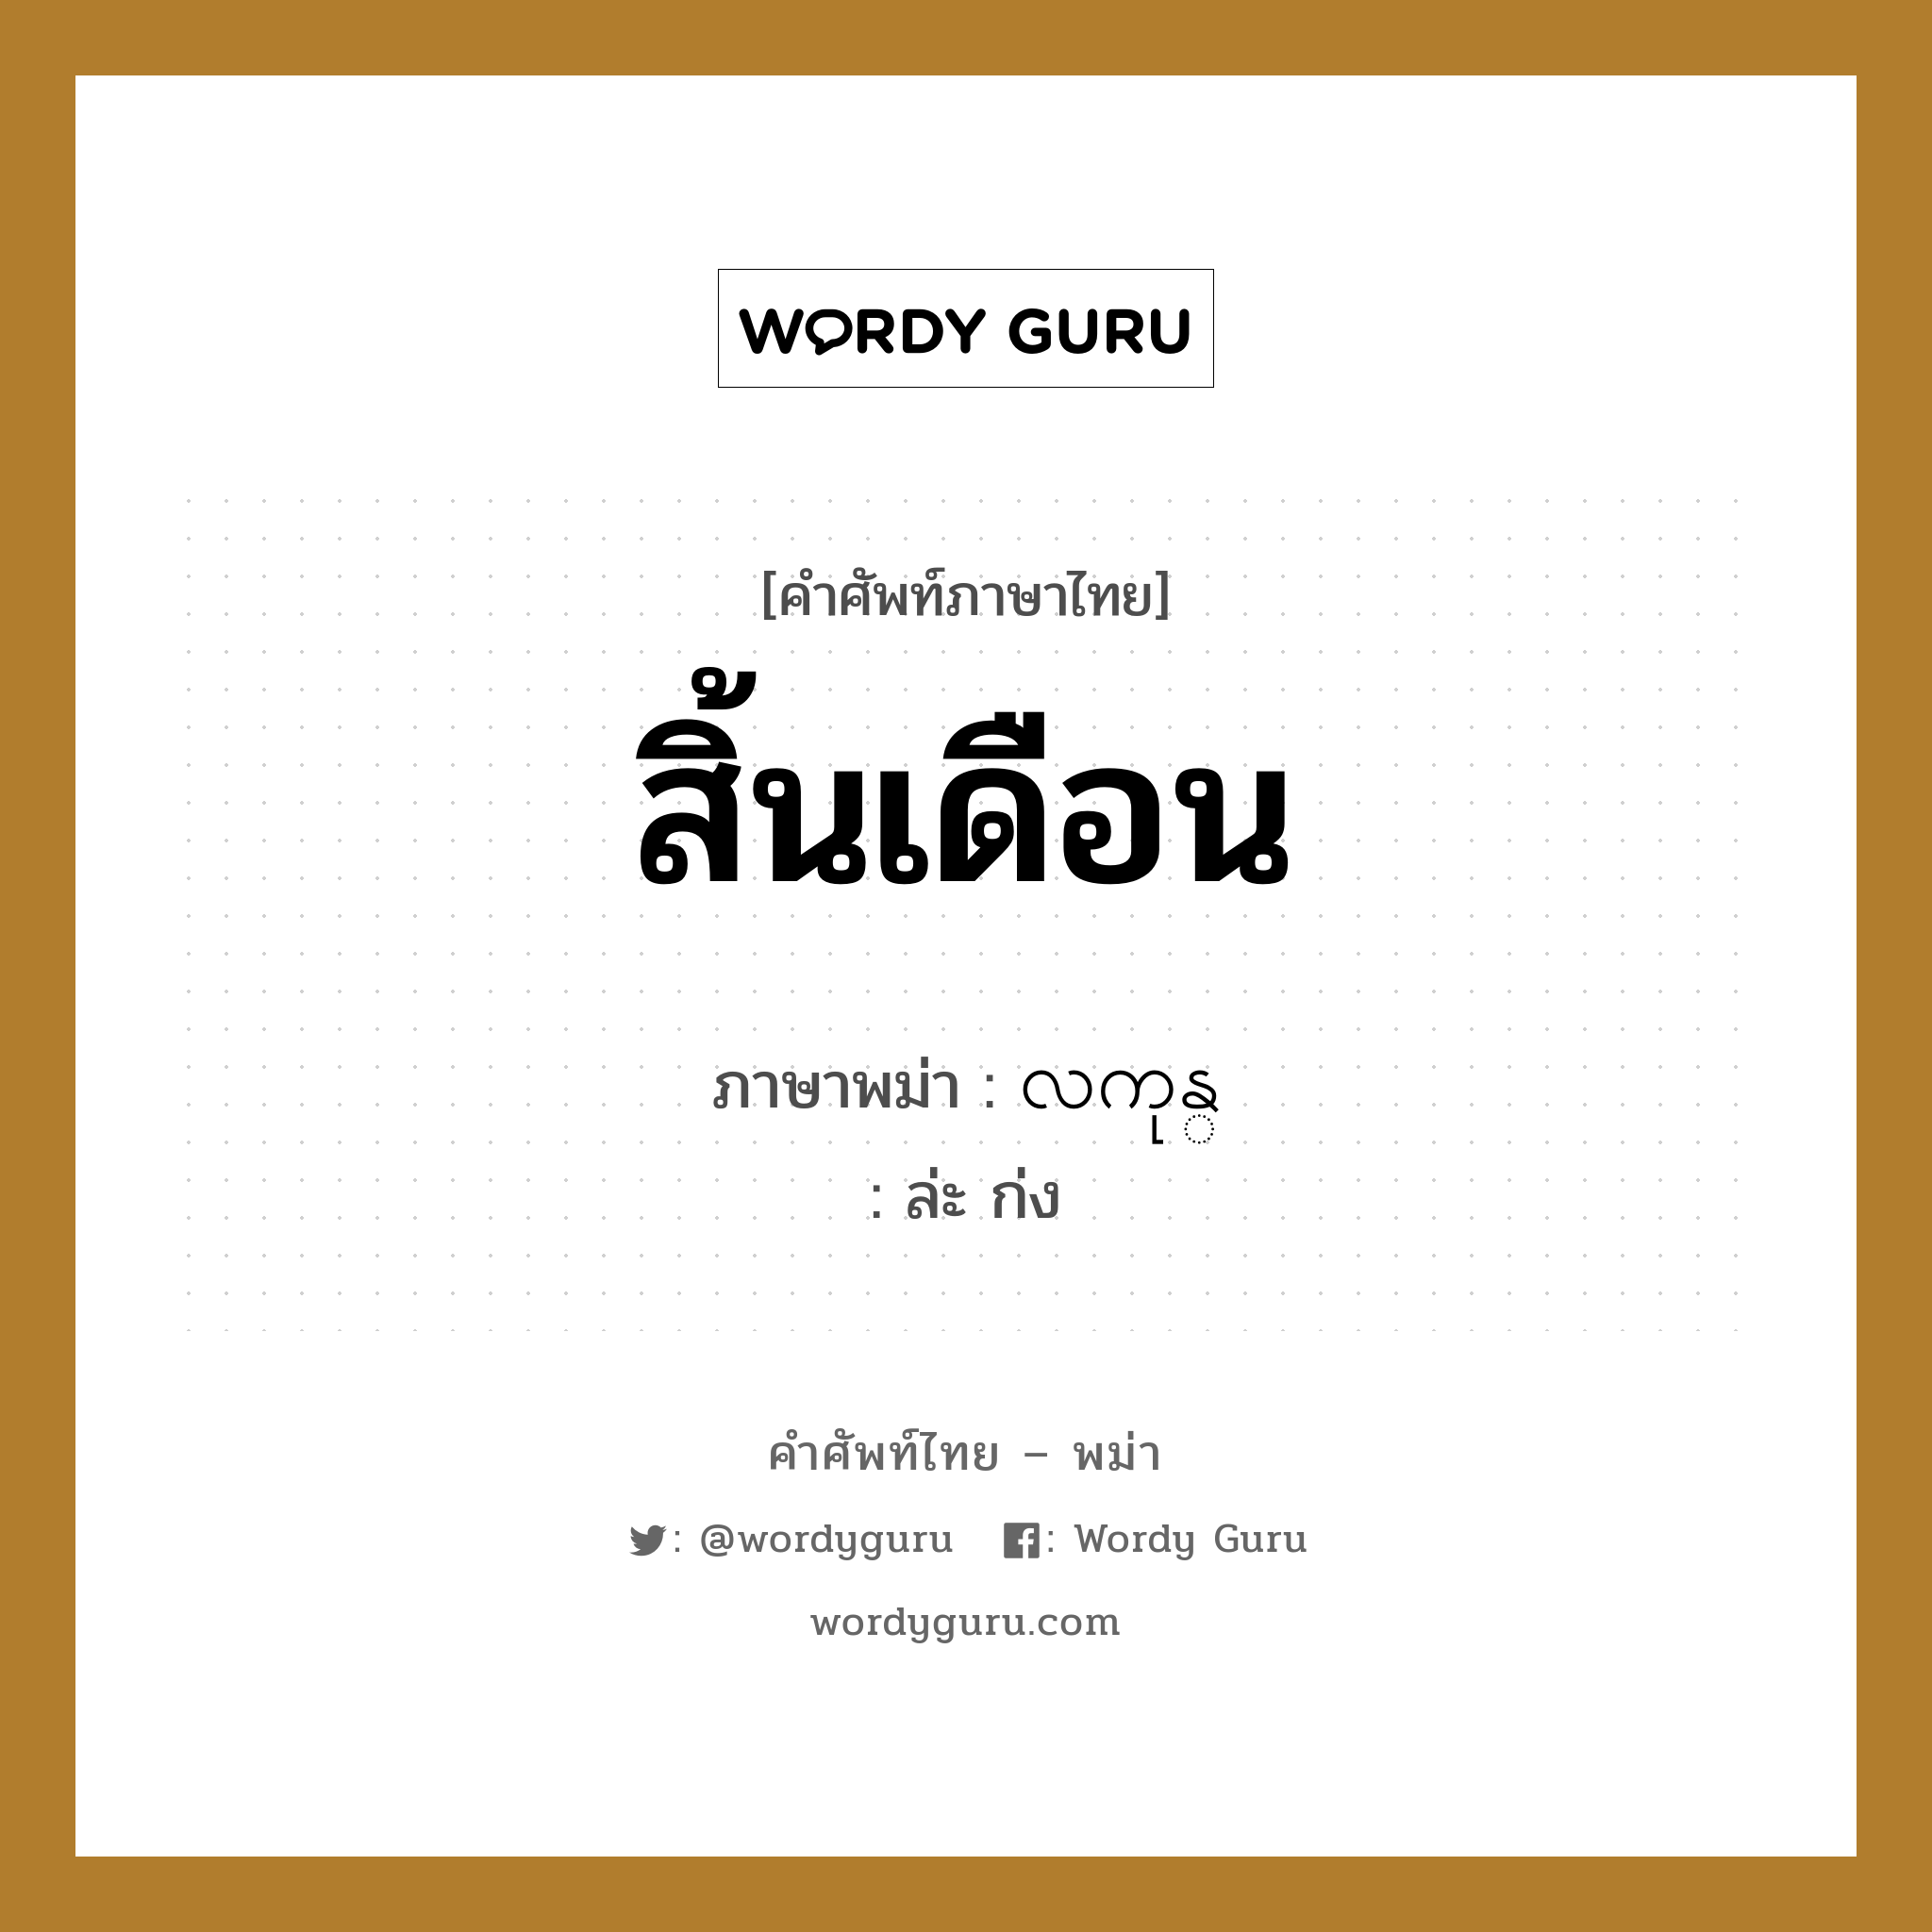 สิ้นเดือน ภาษาพม่าคืออะไร, คำศัพท์ภาษาไทย - พม่า สิ้นเดือน ภาษาพม่า လကုန္ หมวด หมวดวัน เดือน ปี ล่ะ ก่ง หมวด หมวดวัน เดือน ปี